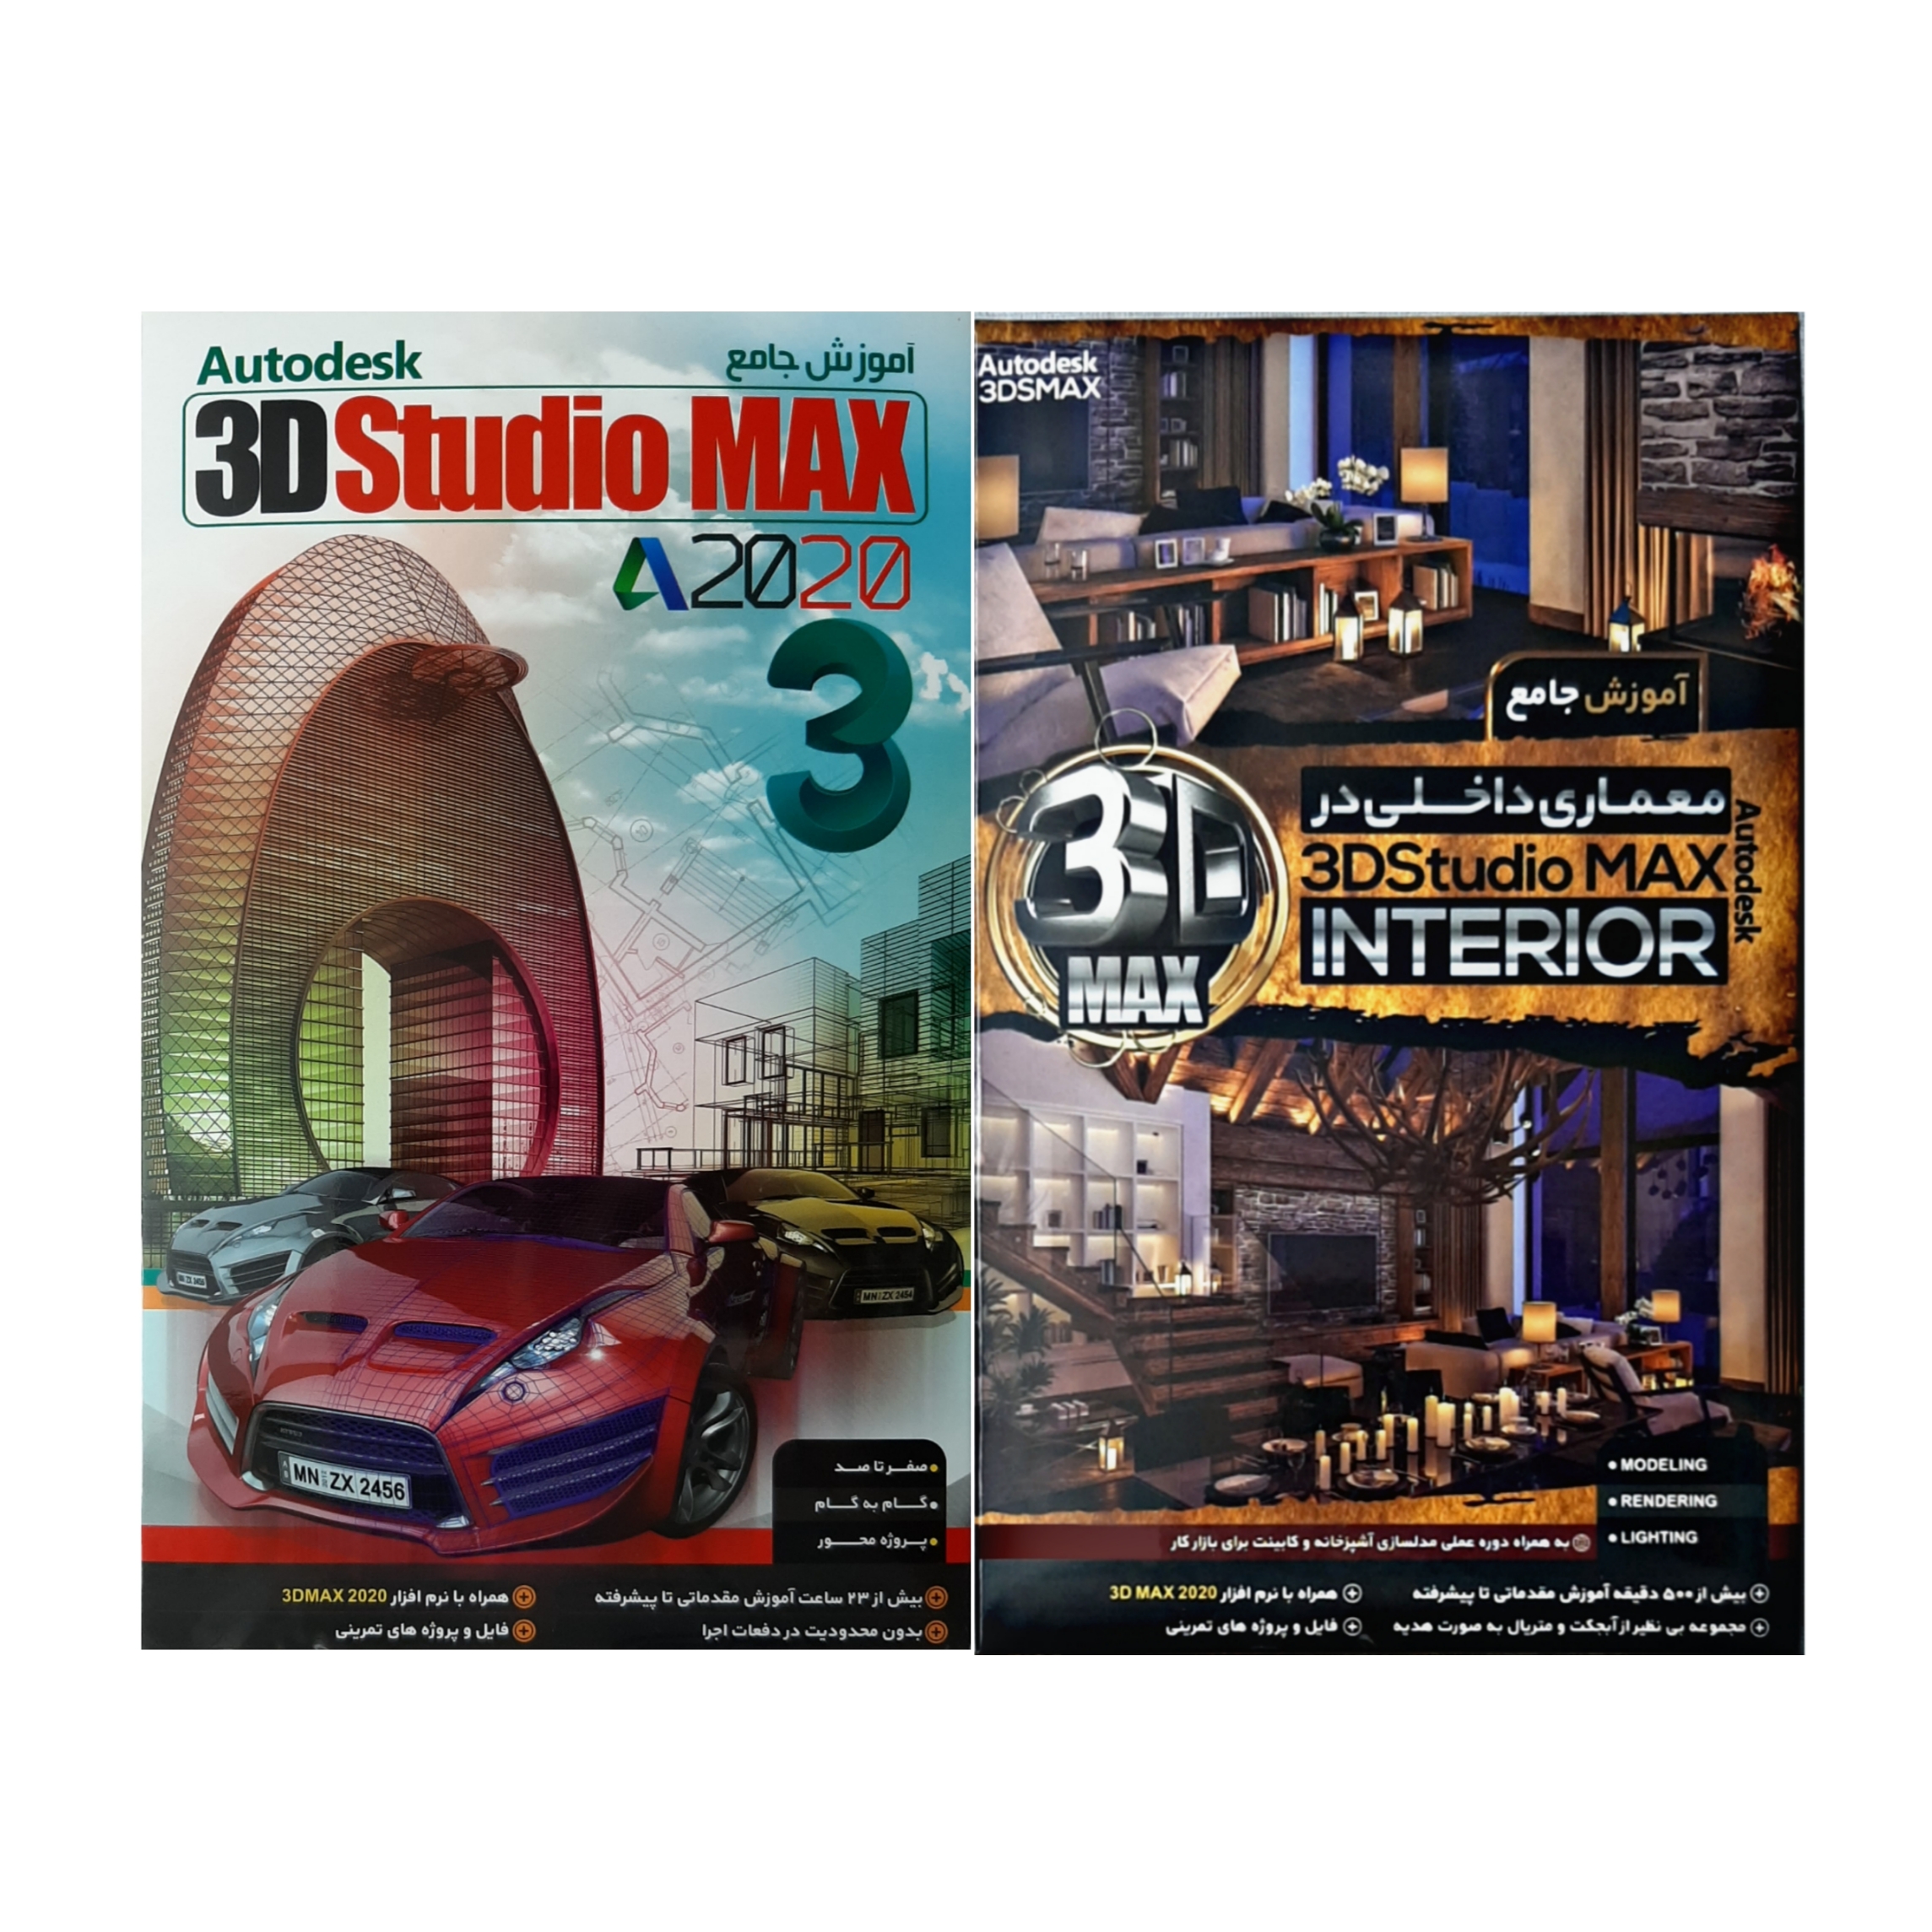 نرم افزار آموزش معماری داخلی در  3D Studio Max 2020 نشر نوین رسانه به همراه نرم افزار آموزش  Autodesk 3D Studio max 2020 نشر نوین رسانه 